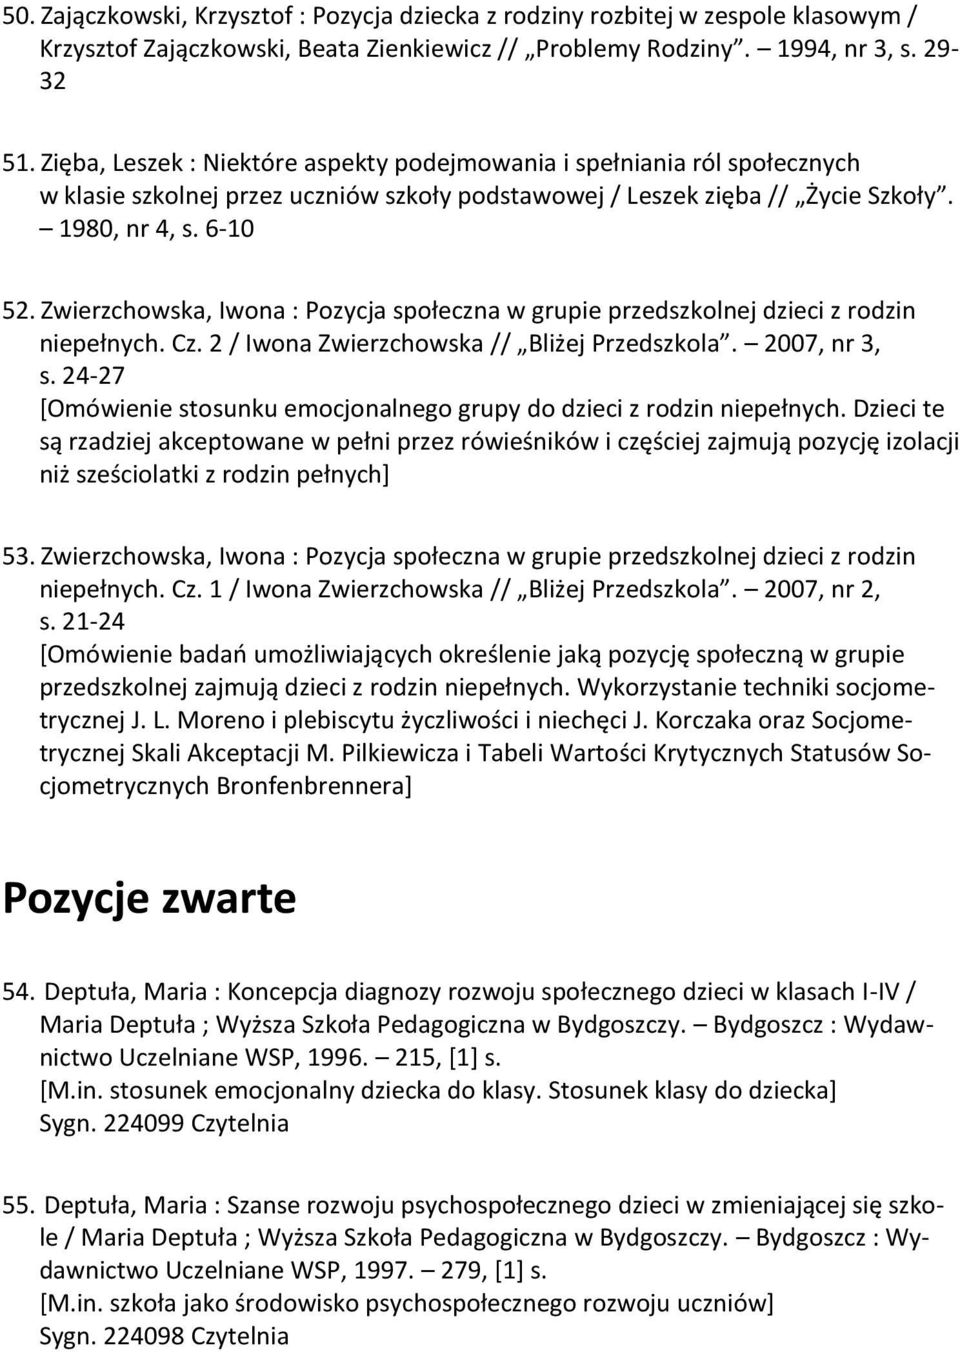 Zwierzchowska, Iwona : Pozycja społeczna w grupie przedszkolnej dzieci z rodzin niepełnych. Cz. 2 / Iwona Zwierzchowska // Bliżej Przedszkola. 2007, nr 3, s.